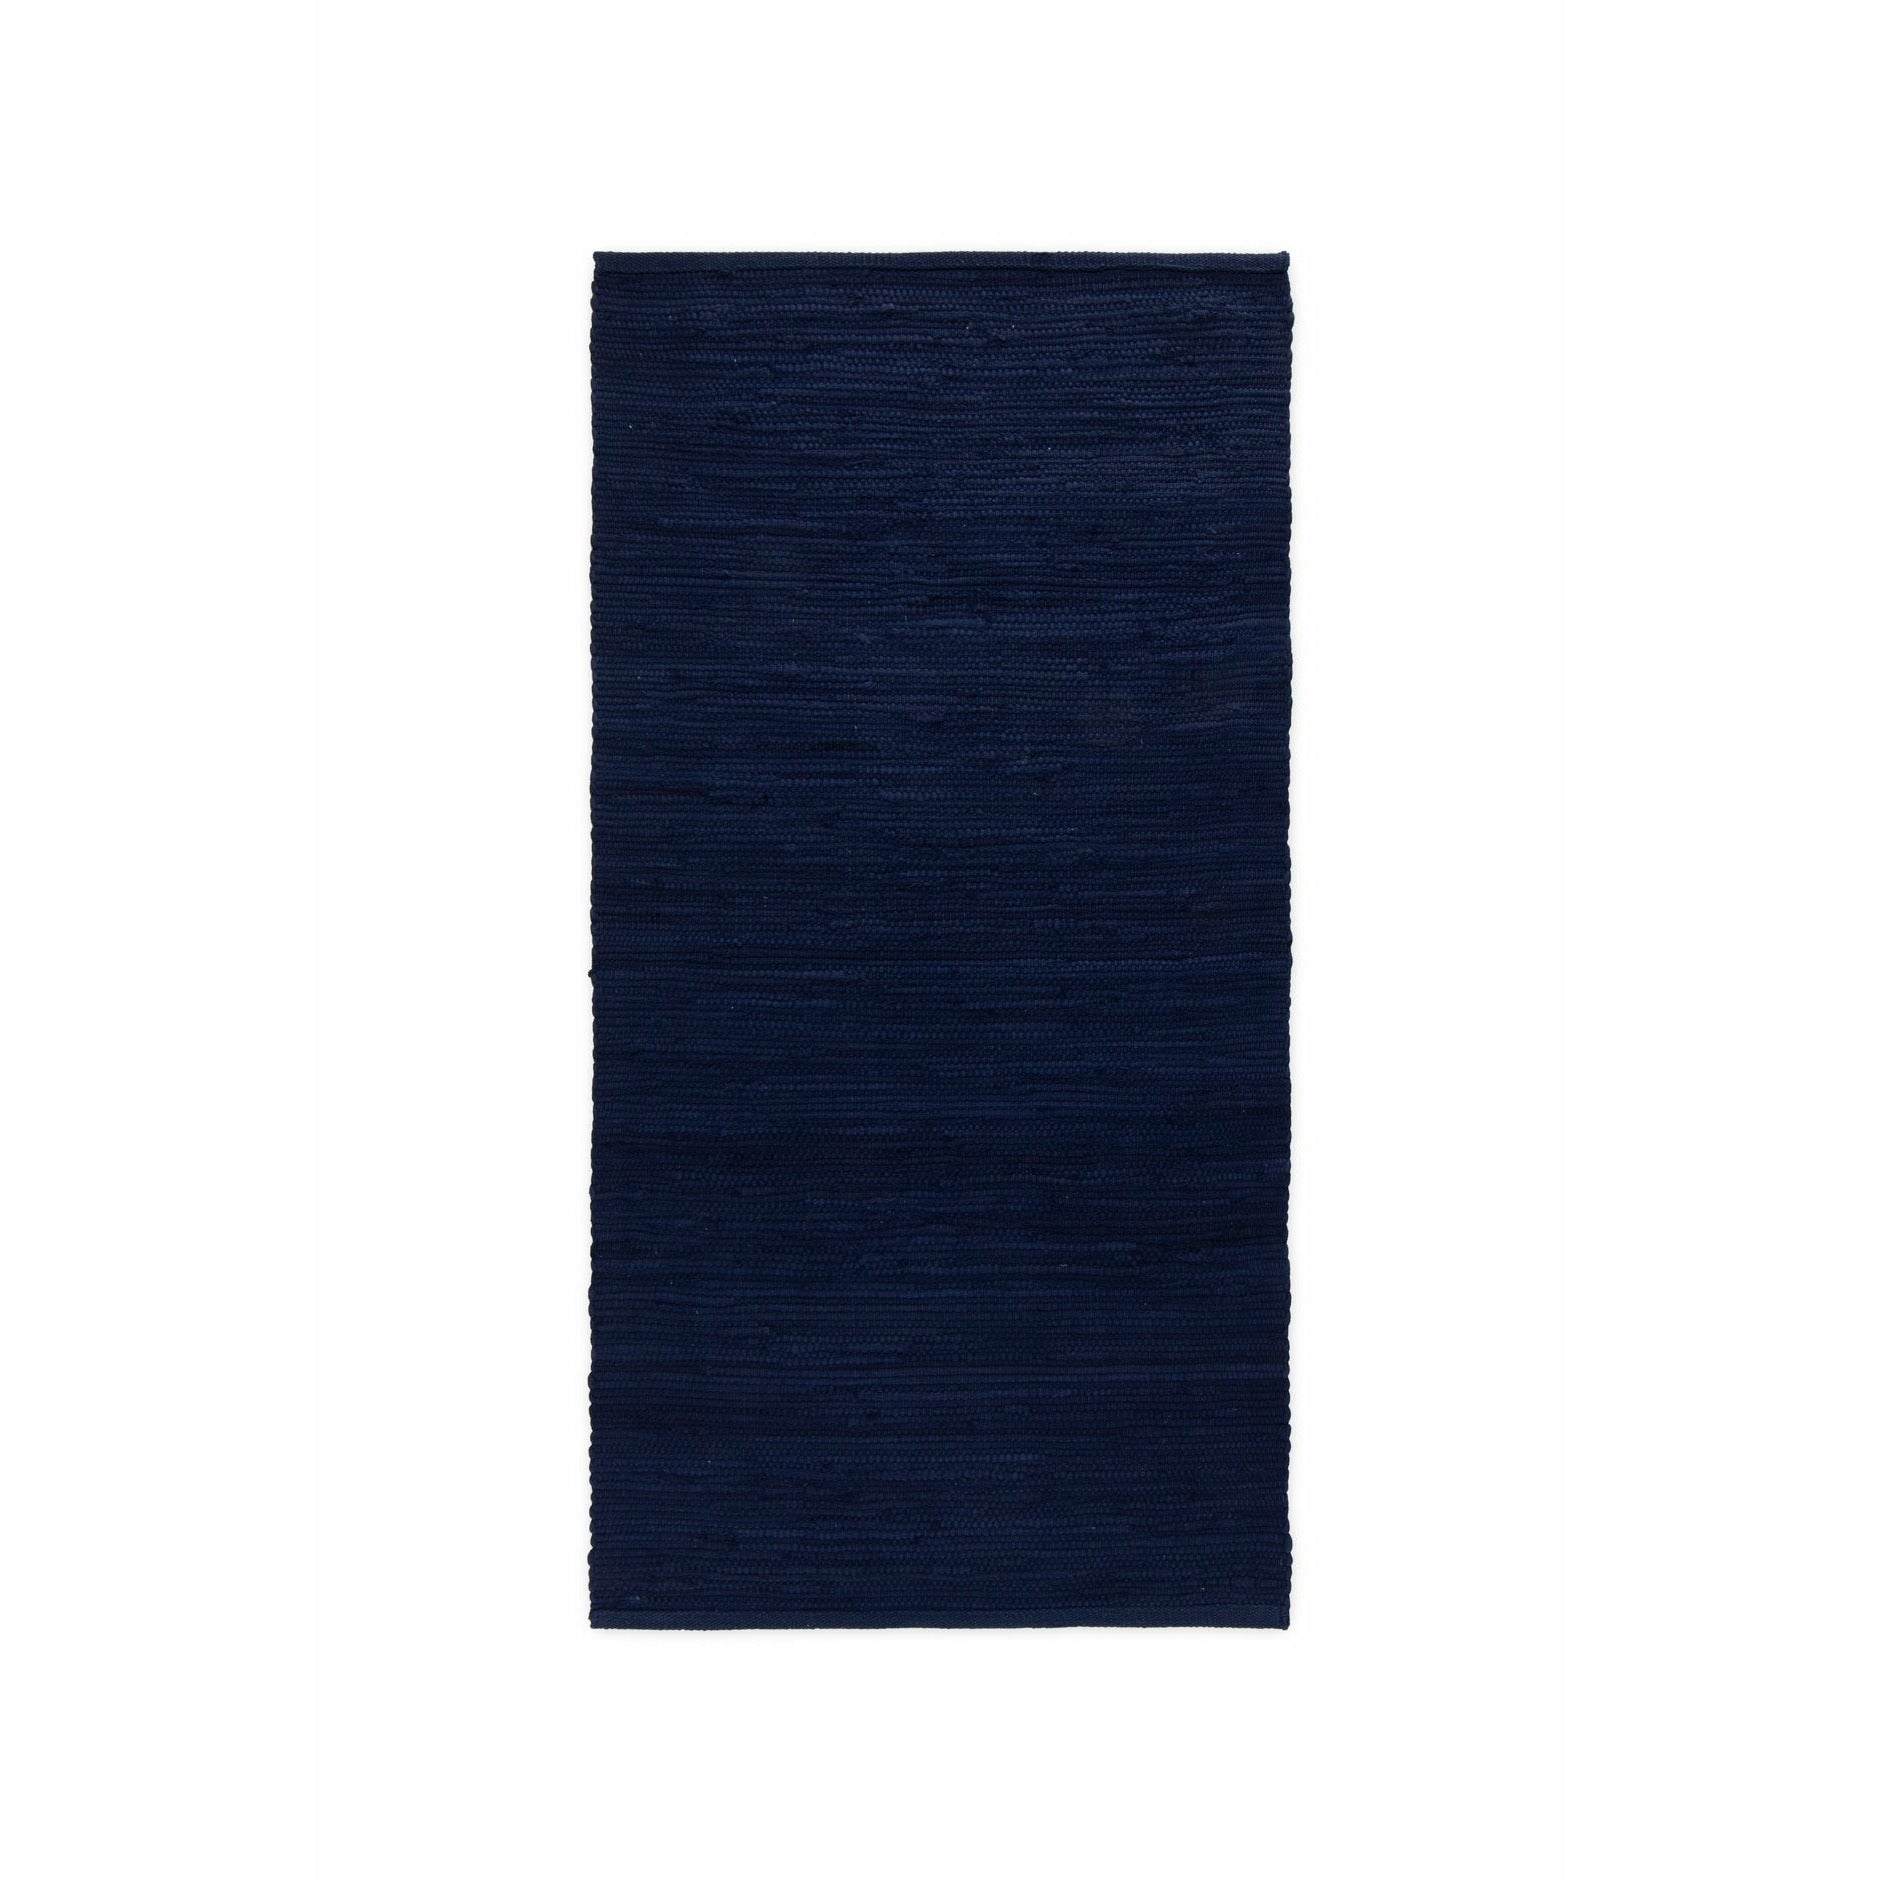 Dywany bawełniany dywan głęboki ocean niebieski, 170 x 240 cm